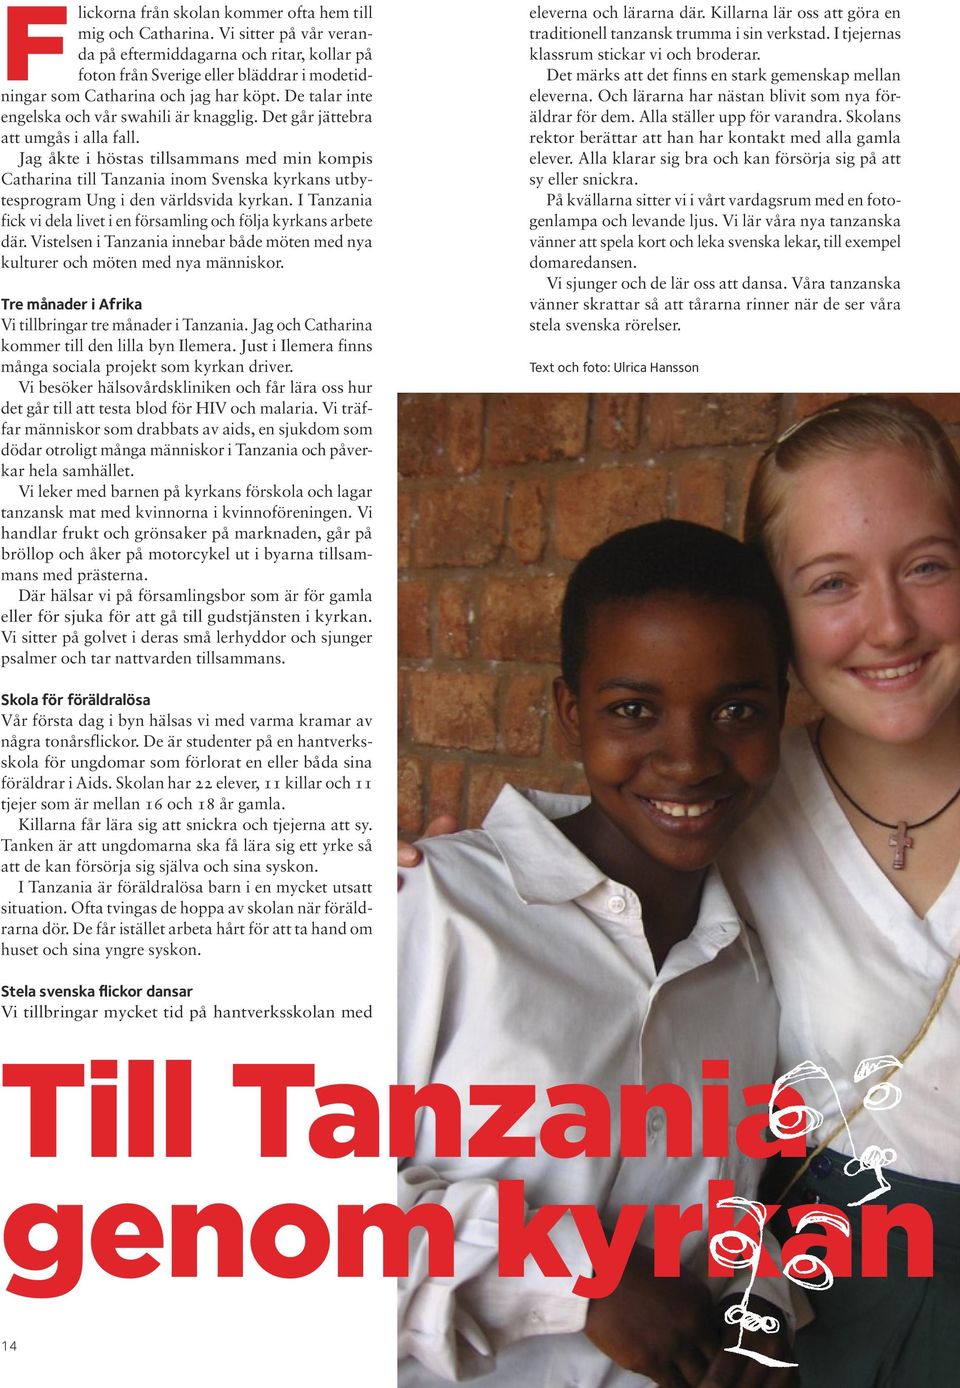 Det går jättebra att umgås i alla fall. Jag åkte i höstas tillsammans med min kompis Catharina till Tanzania inom Svenska kyrkans utbytesprogram Ung i den världsvida kyrkan.